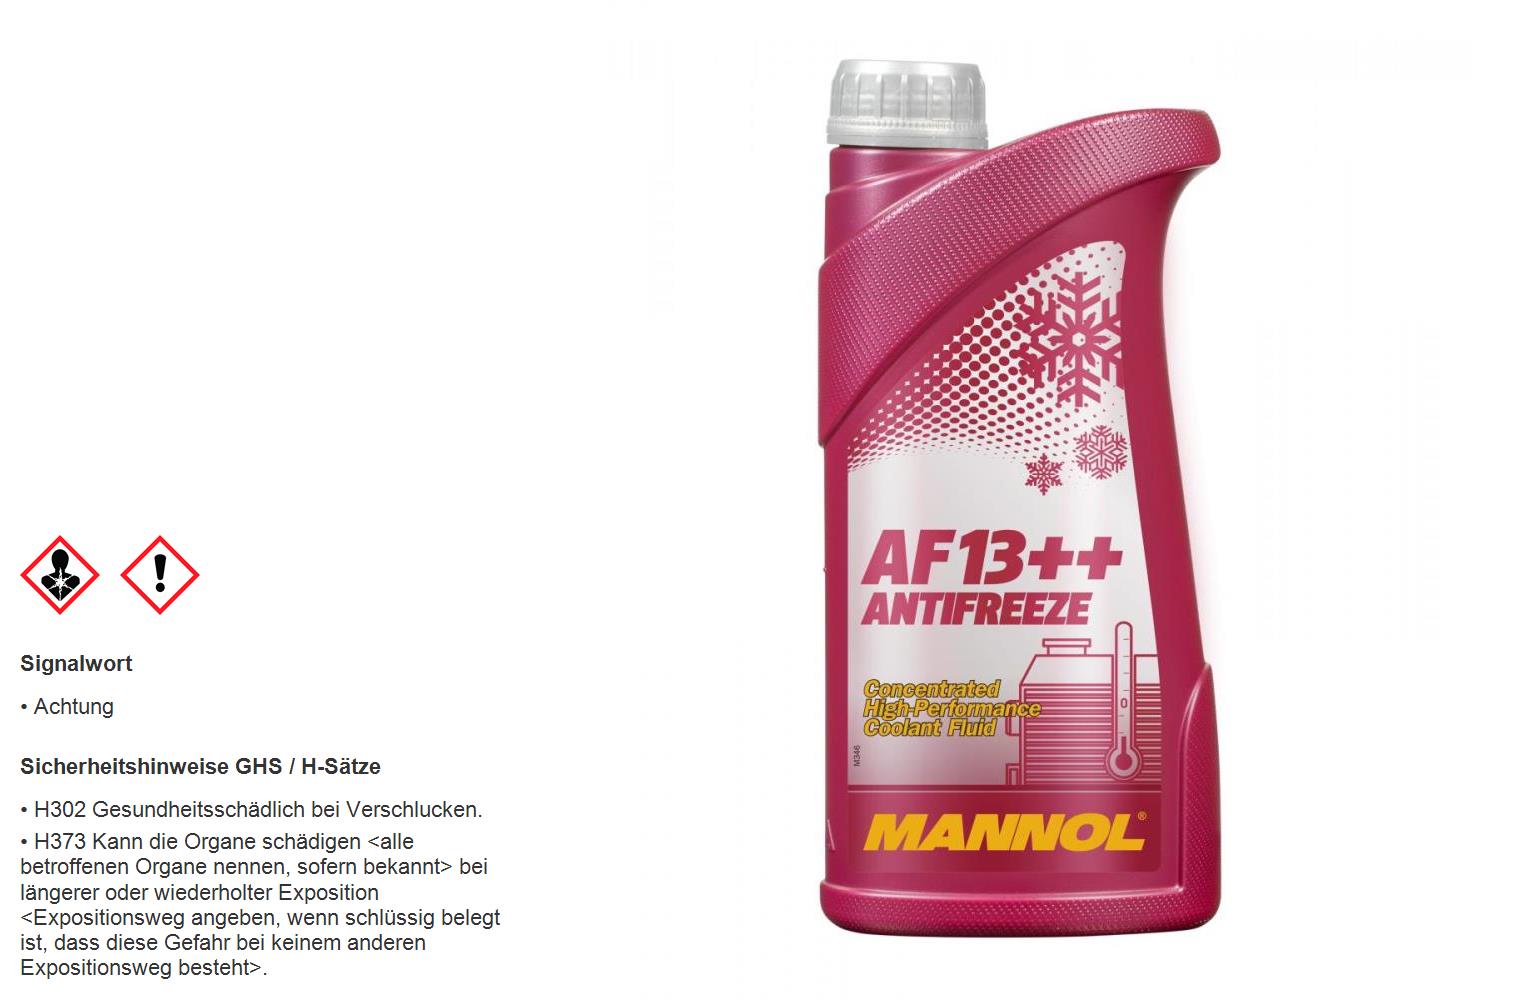 MANNOL 1 Liter AF13++ Antifreeze (High-performance) Kühlerfrostschutz